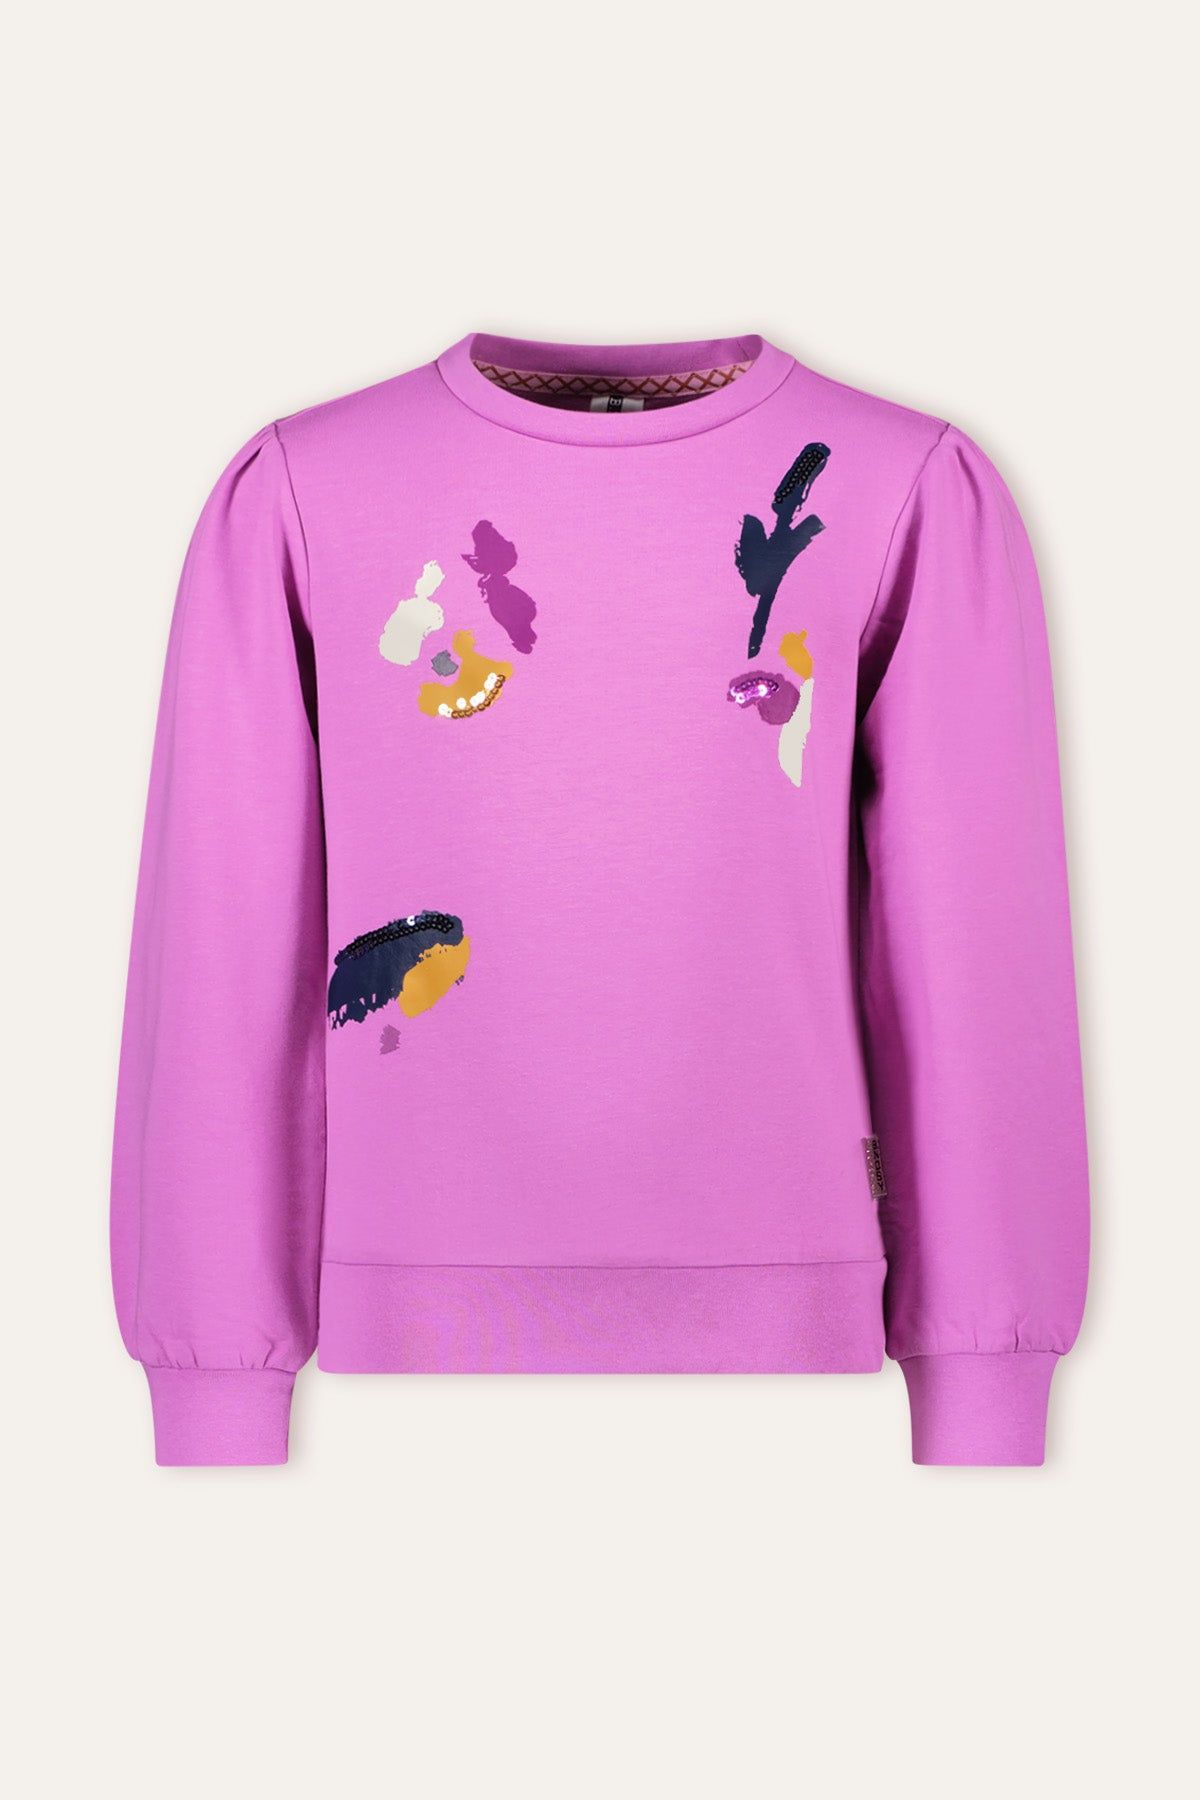 Trui / Sweater Filou Girls sweater paars